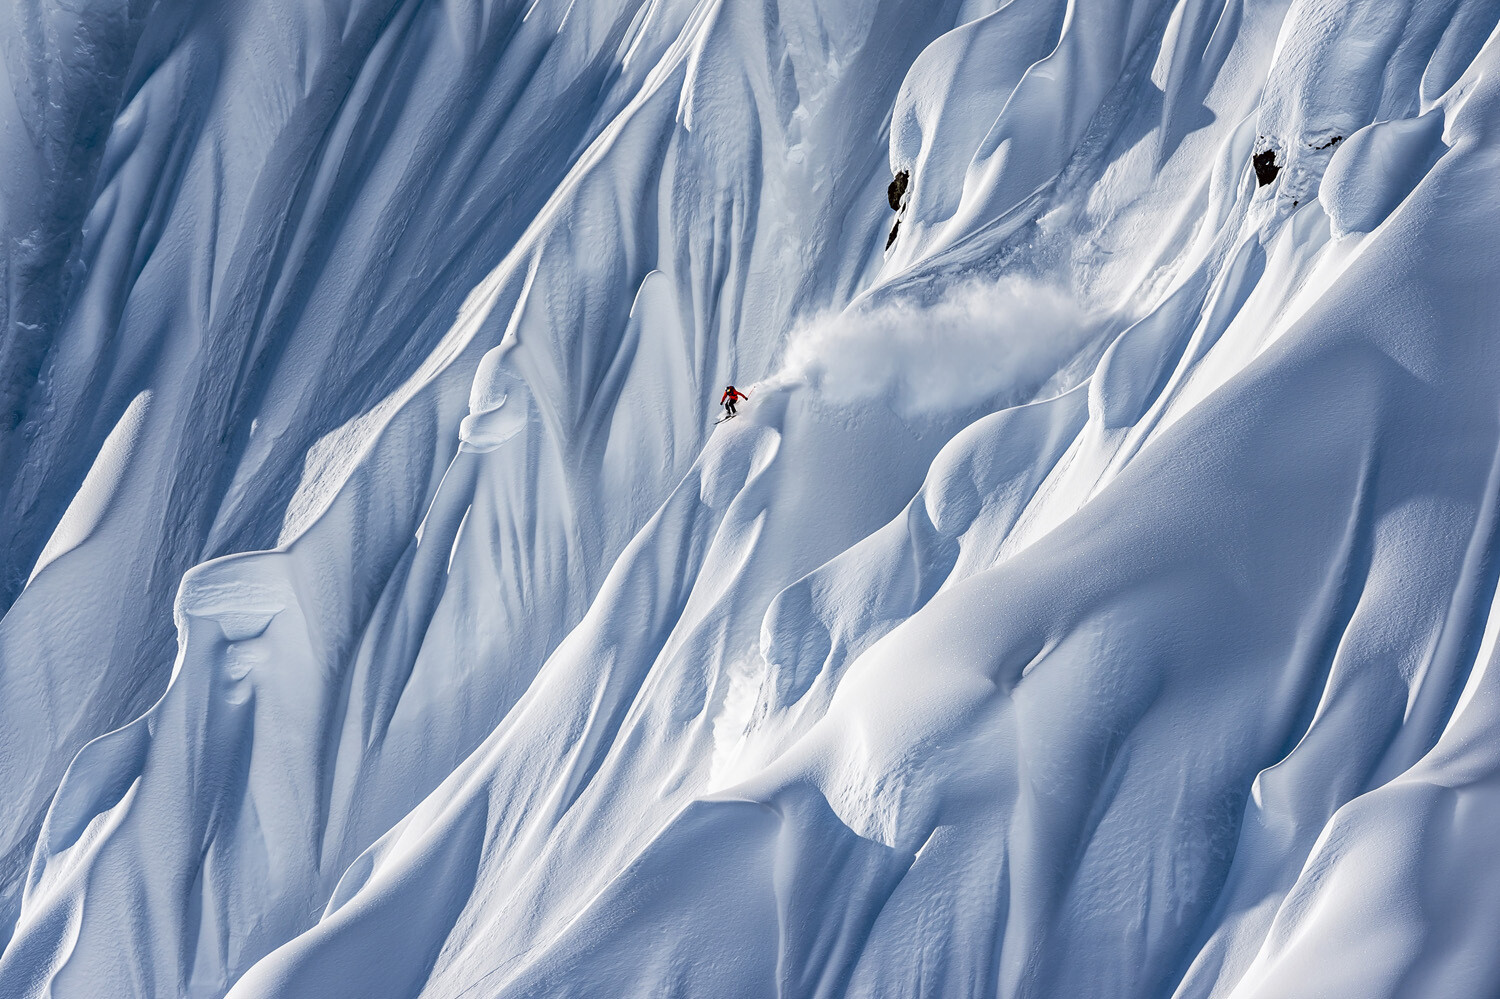 1-е место в категории Пейзажи и приключения, одиночное изображение, 2021. Безумно храбрый лыжник. Хейнс, Аляска. Фотограф Палли Леармонд